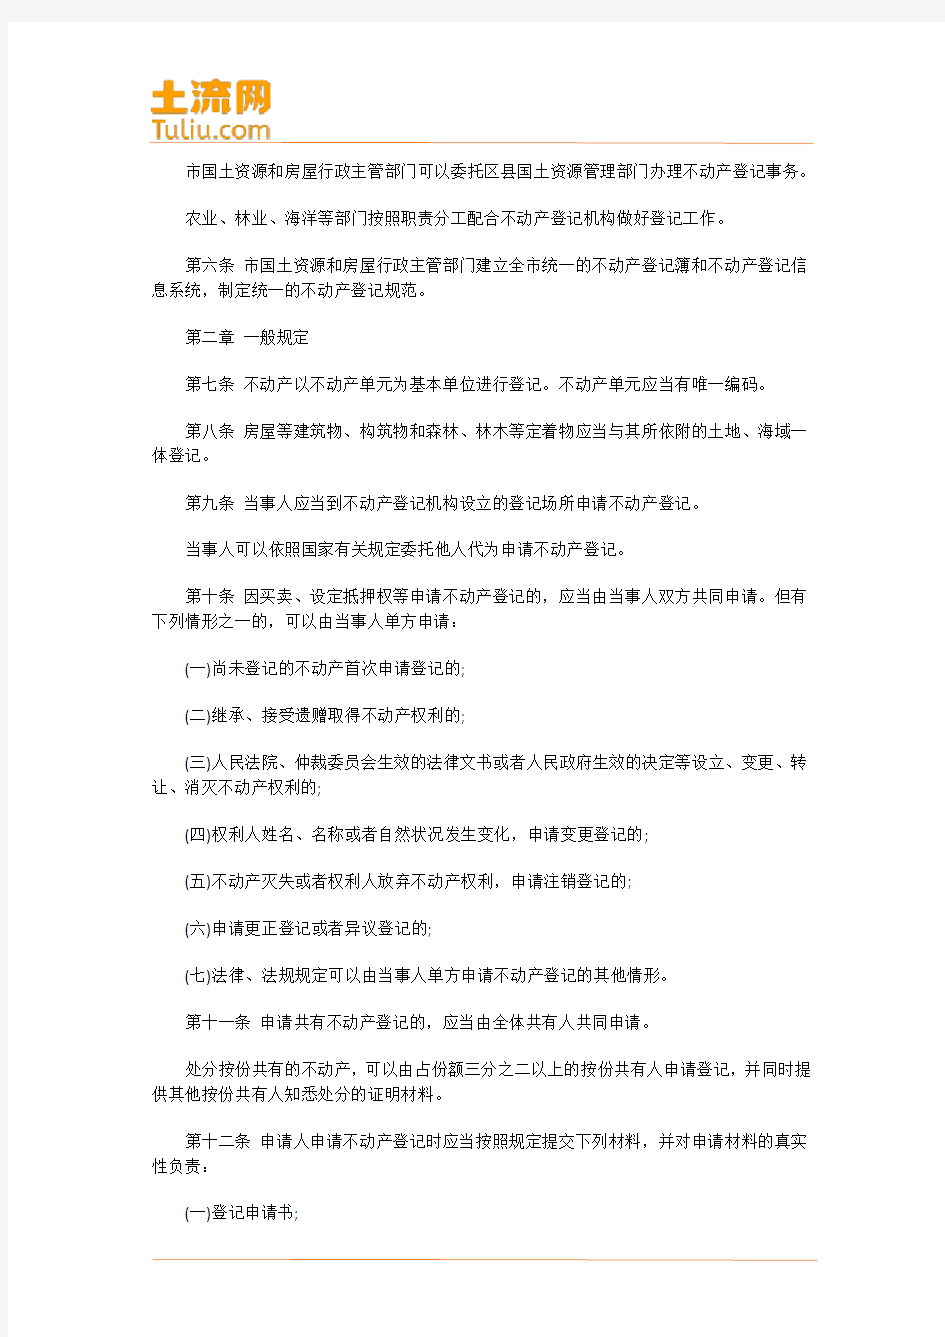 天津市不动产登记条例(2016年9月1日起施行)